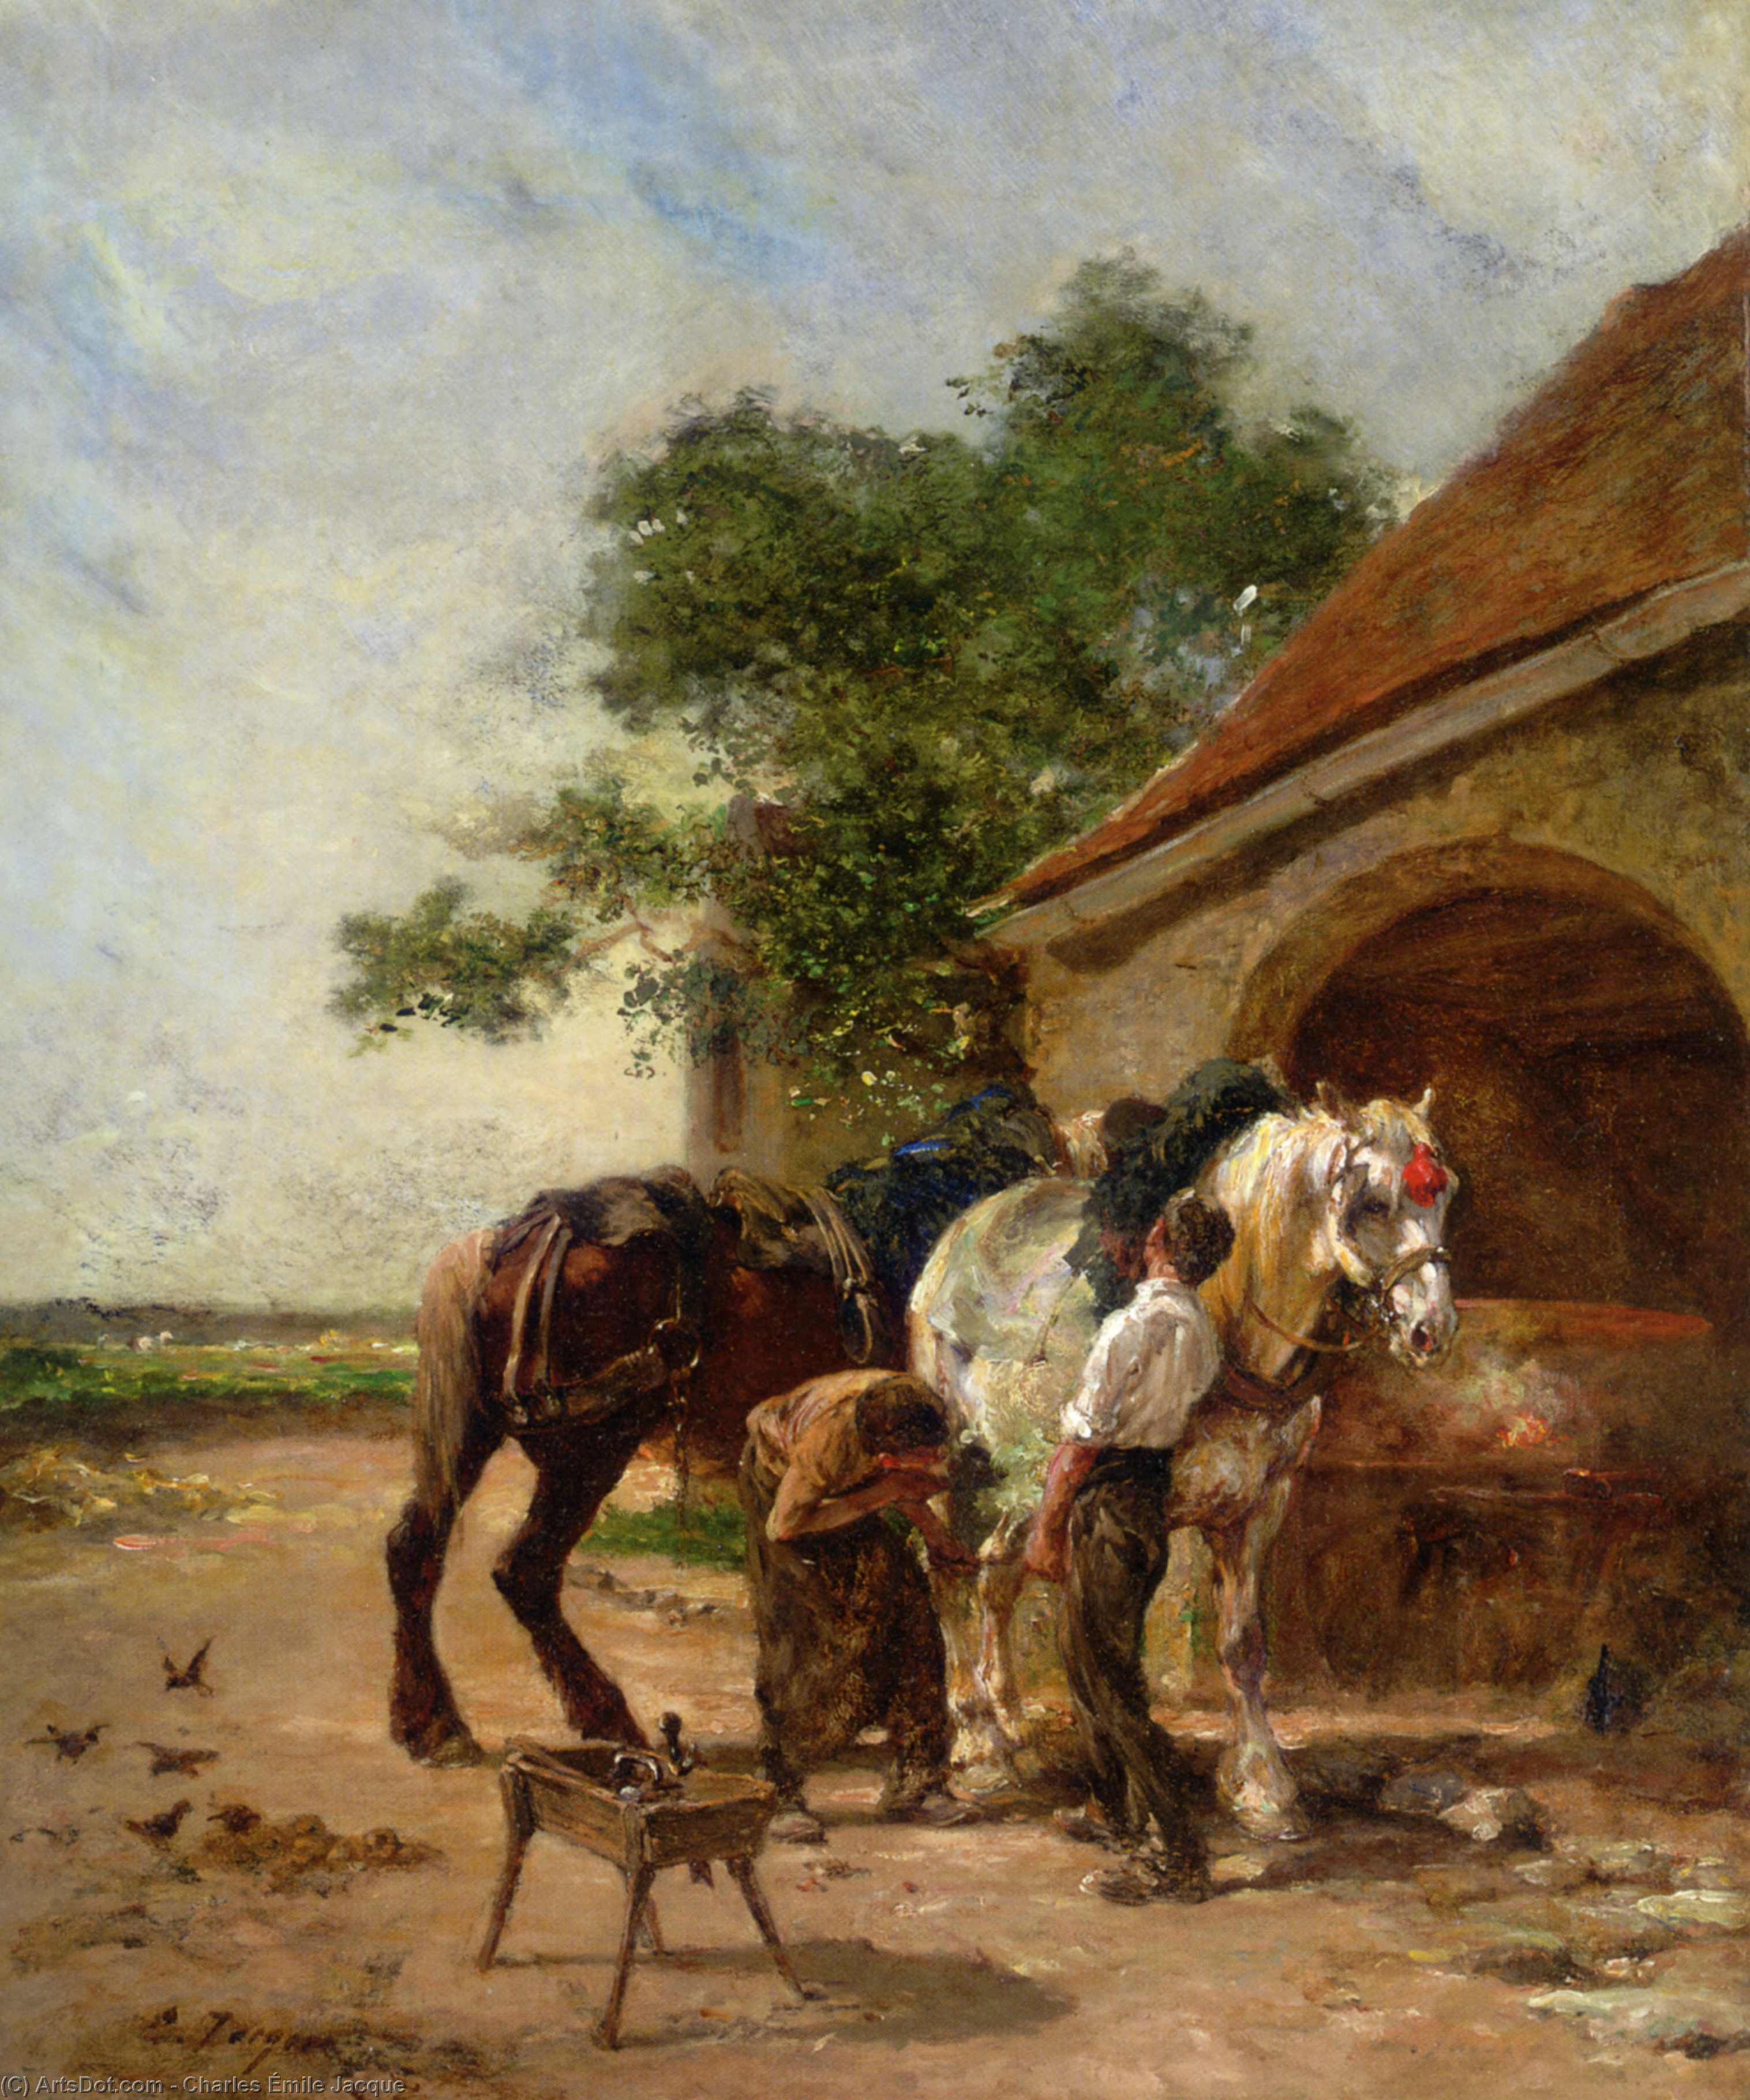 WikiOO.org - אנציקלופדיה לאמנויות יפות - ציור, יצירות אמנות Charles Émile Jacque - Attending to the horses